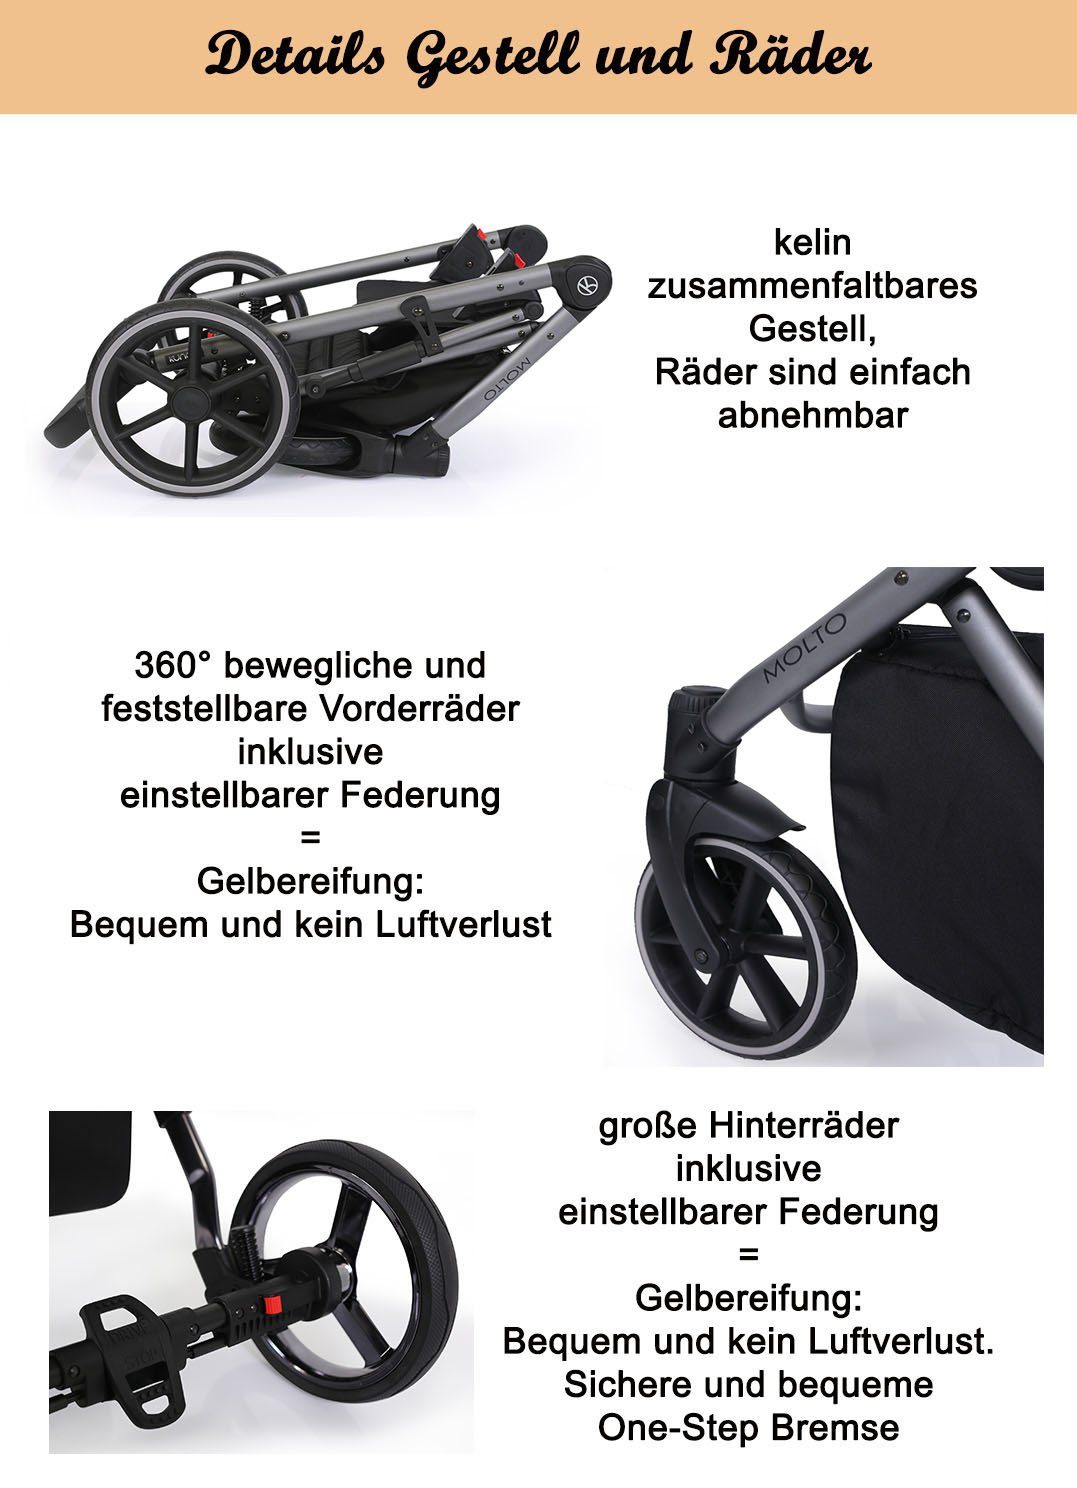 3 - Jahre Gestell Molto Autositz = Teile 4 babies-on-wheels Grau-Dekor 1 schwarzes inkl. 13 von - Kombi-Kinderwagen Geburt bis in